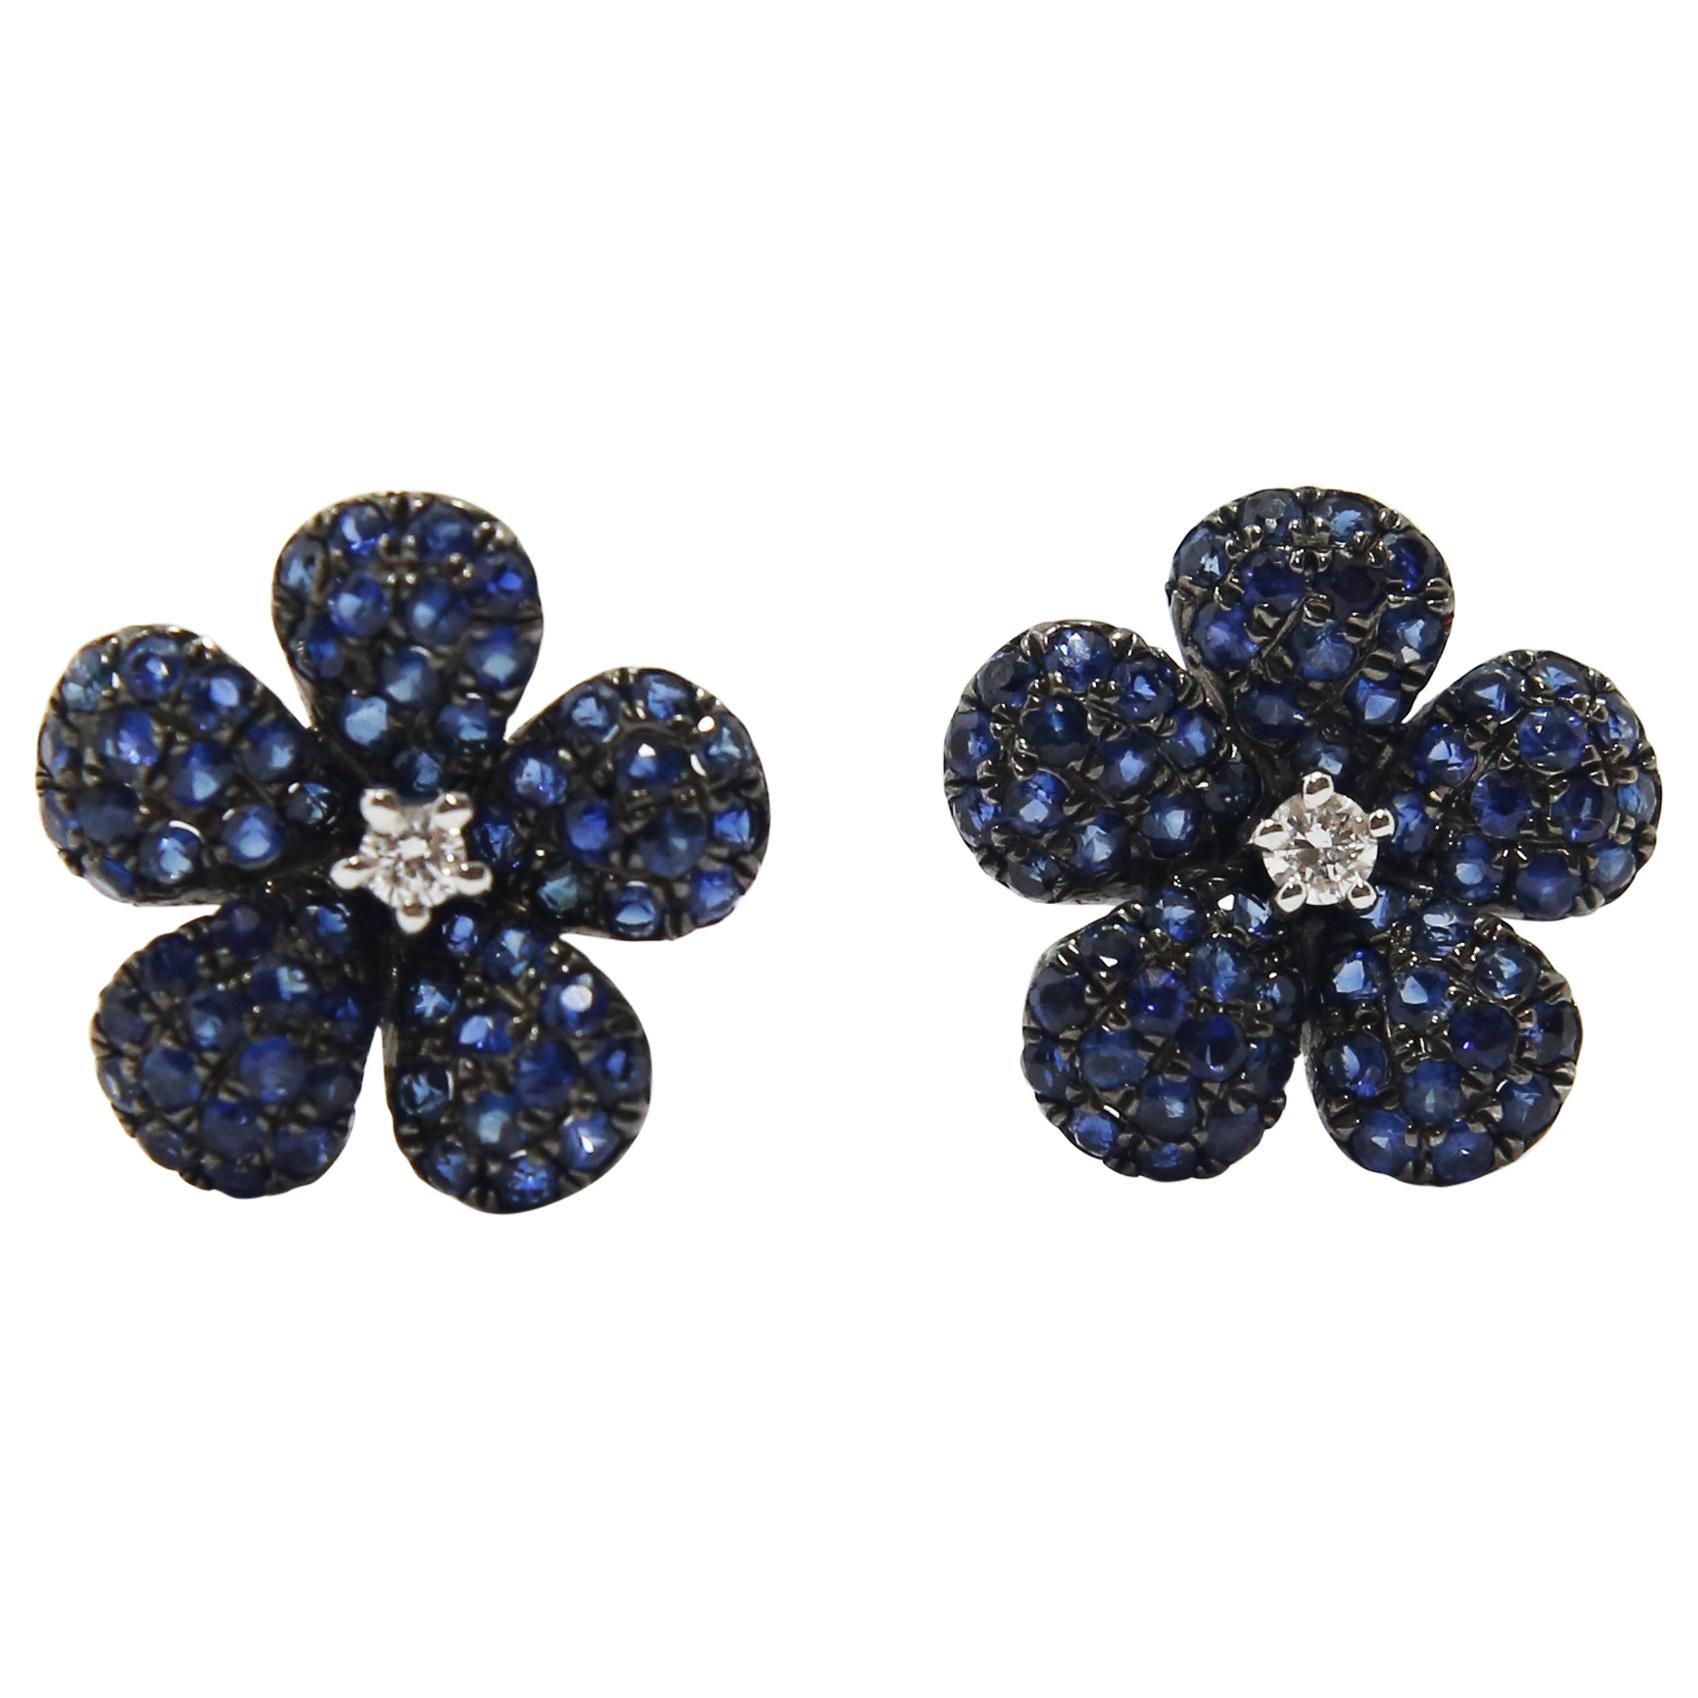 Blue Sapphire Flower Earrings in 18k White Gold center diamonds 